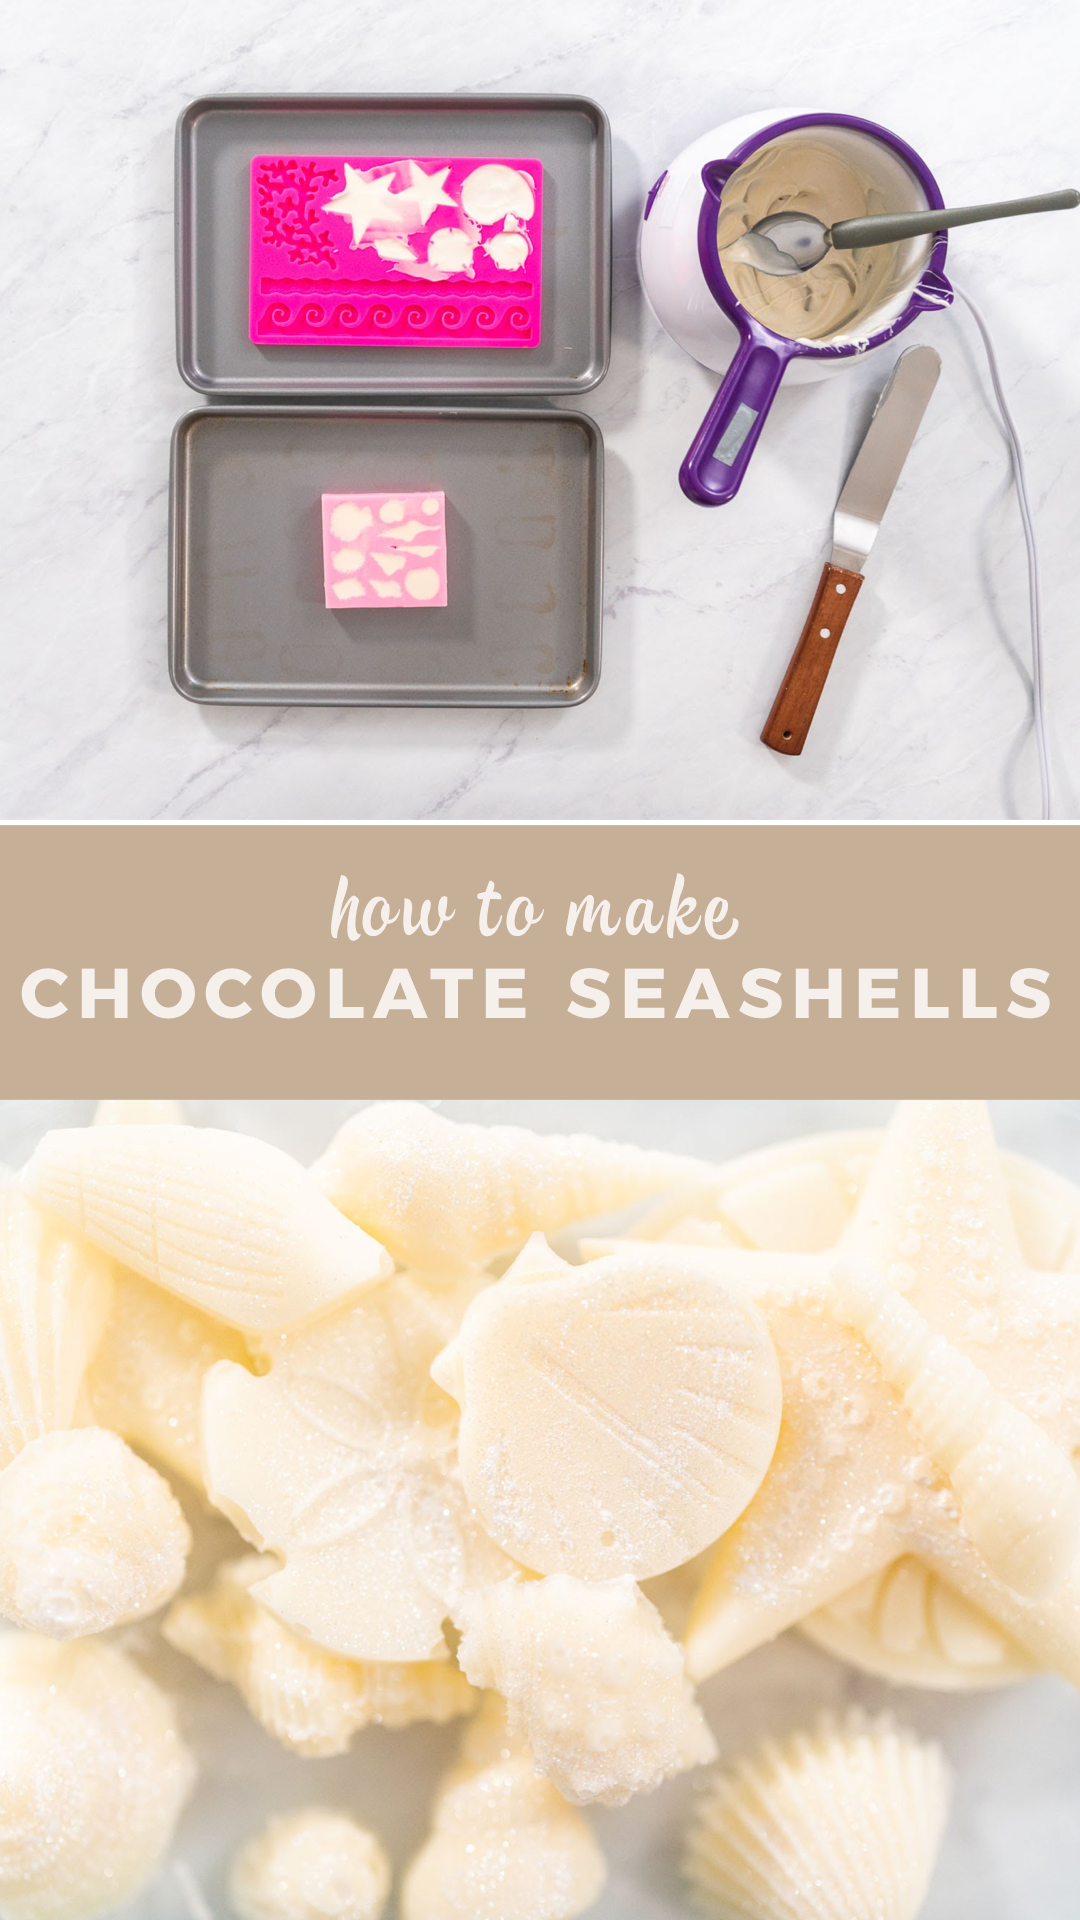 How to make chocolate seashells